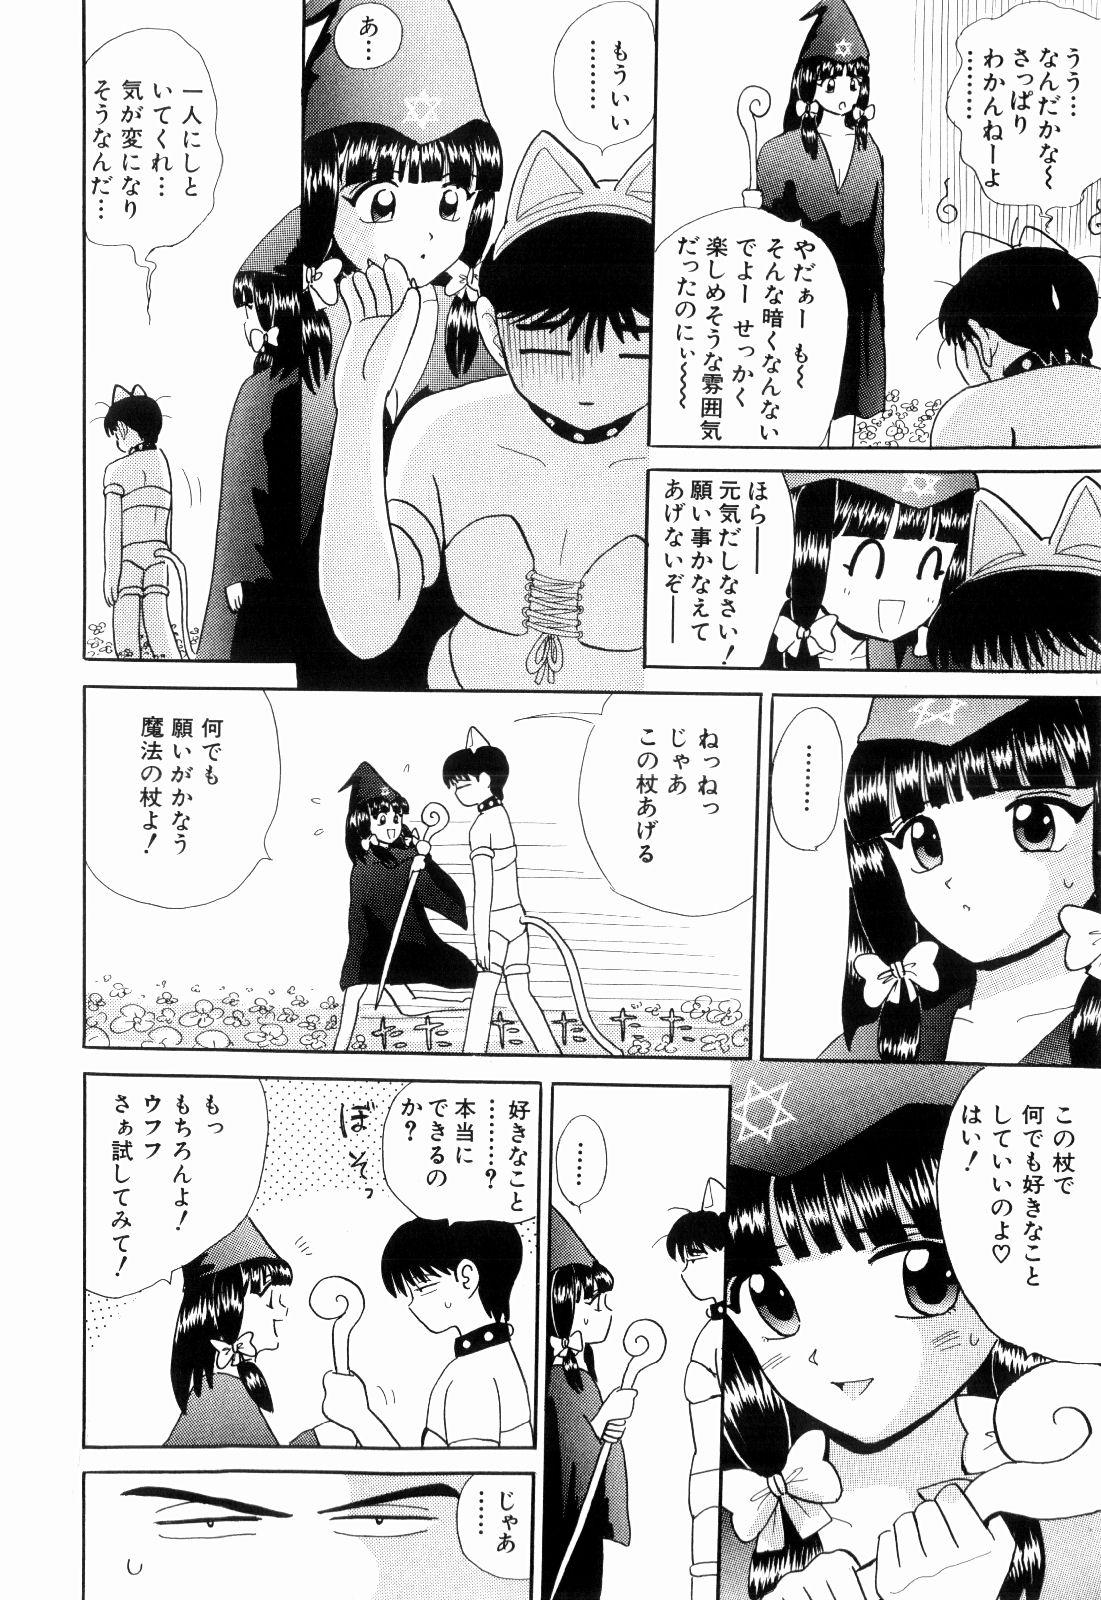 Star Kenjiro Kakimoto - Futari Kurashi 11 Bubble - Page 8